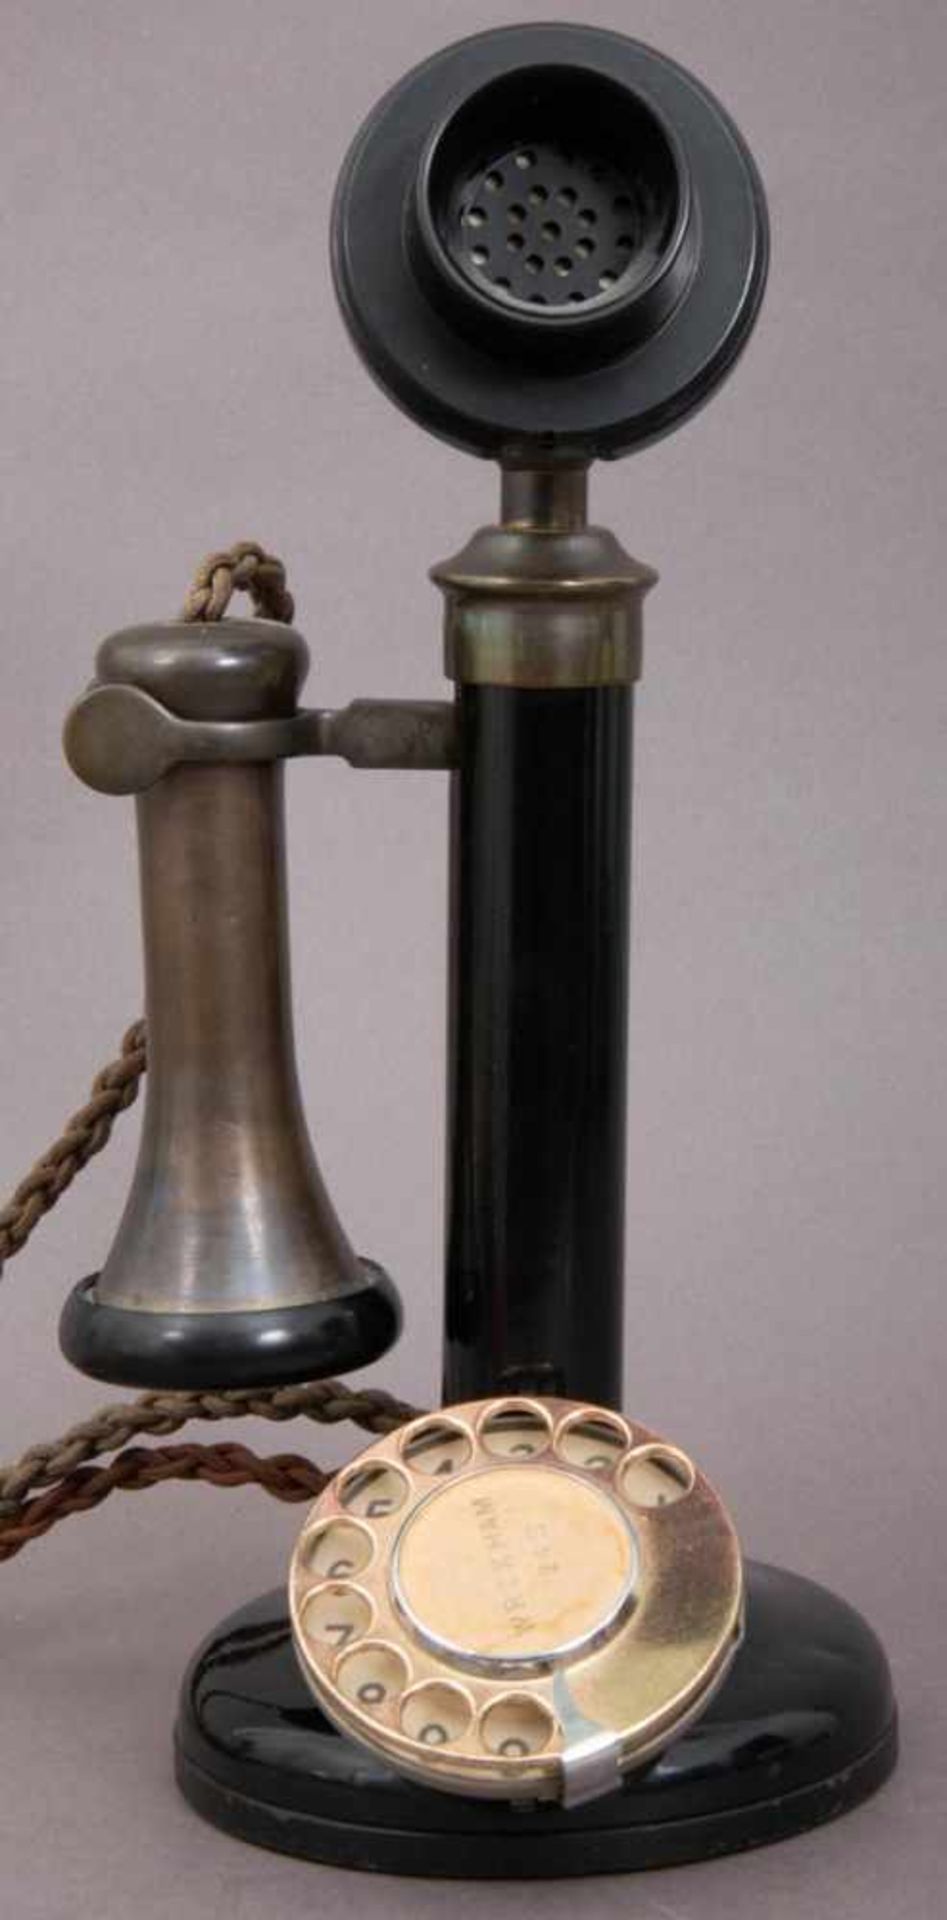 Altes Telefon. England um 1920/30. Schwarz lackiertes Metall mit Wählscheibe, Sprechmuschel und